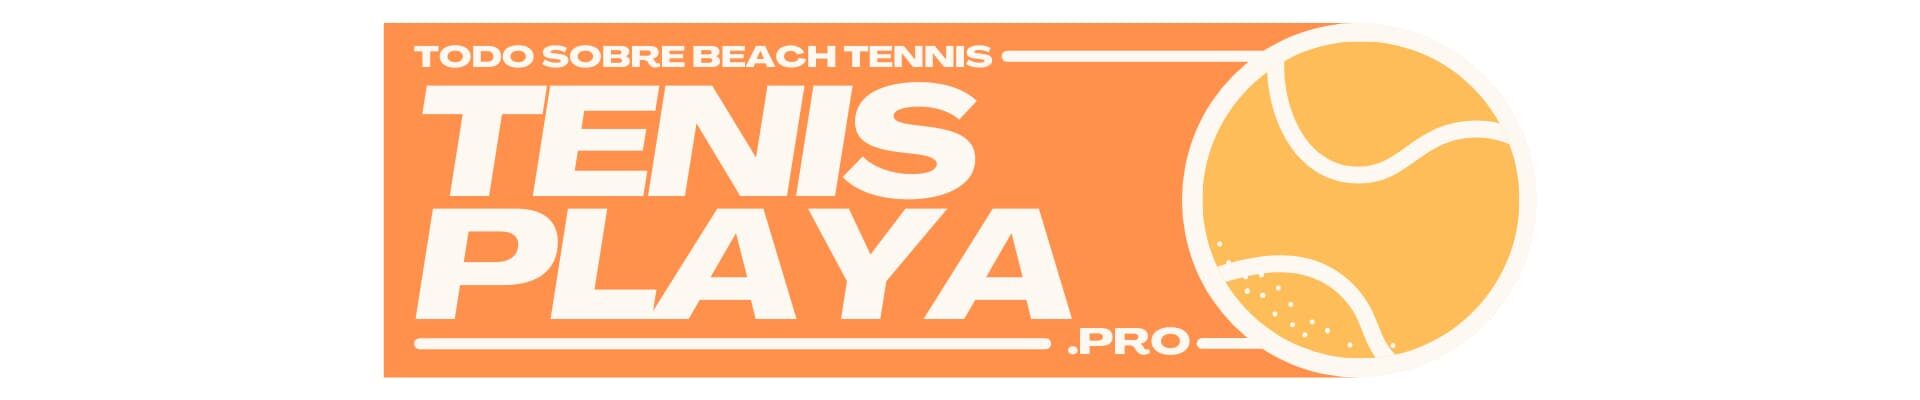 Tenis Playa Pro